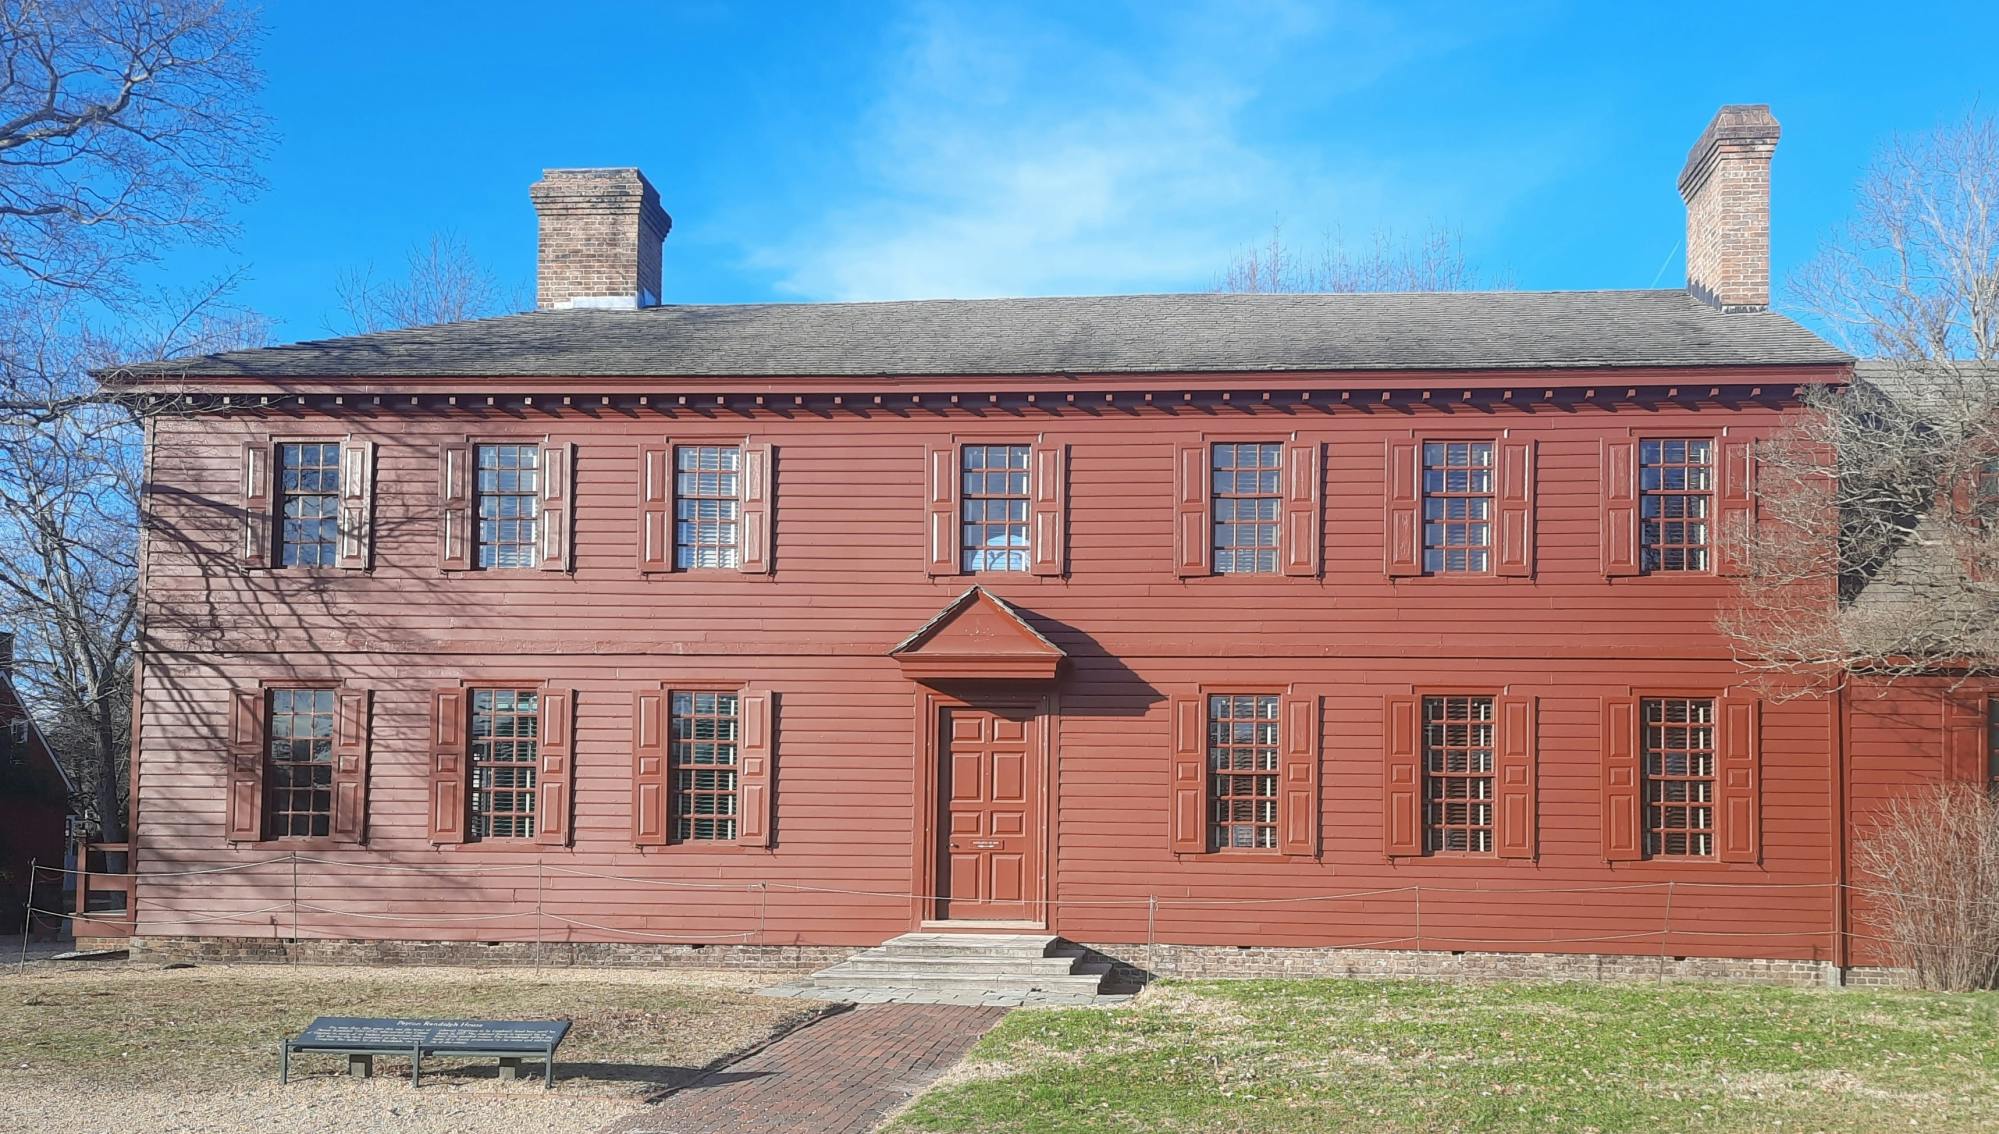 Williamsburg: visita guidata sulla storia della schiavitù